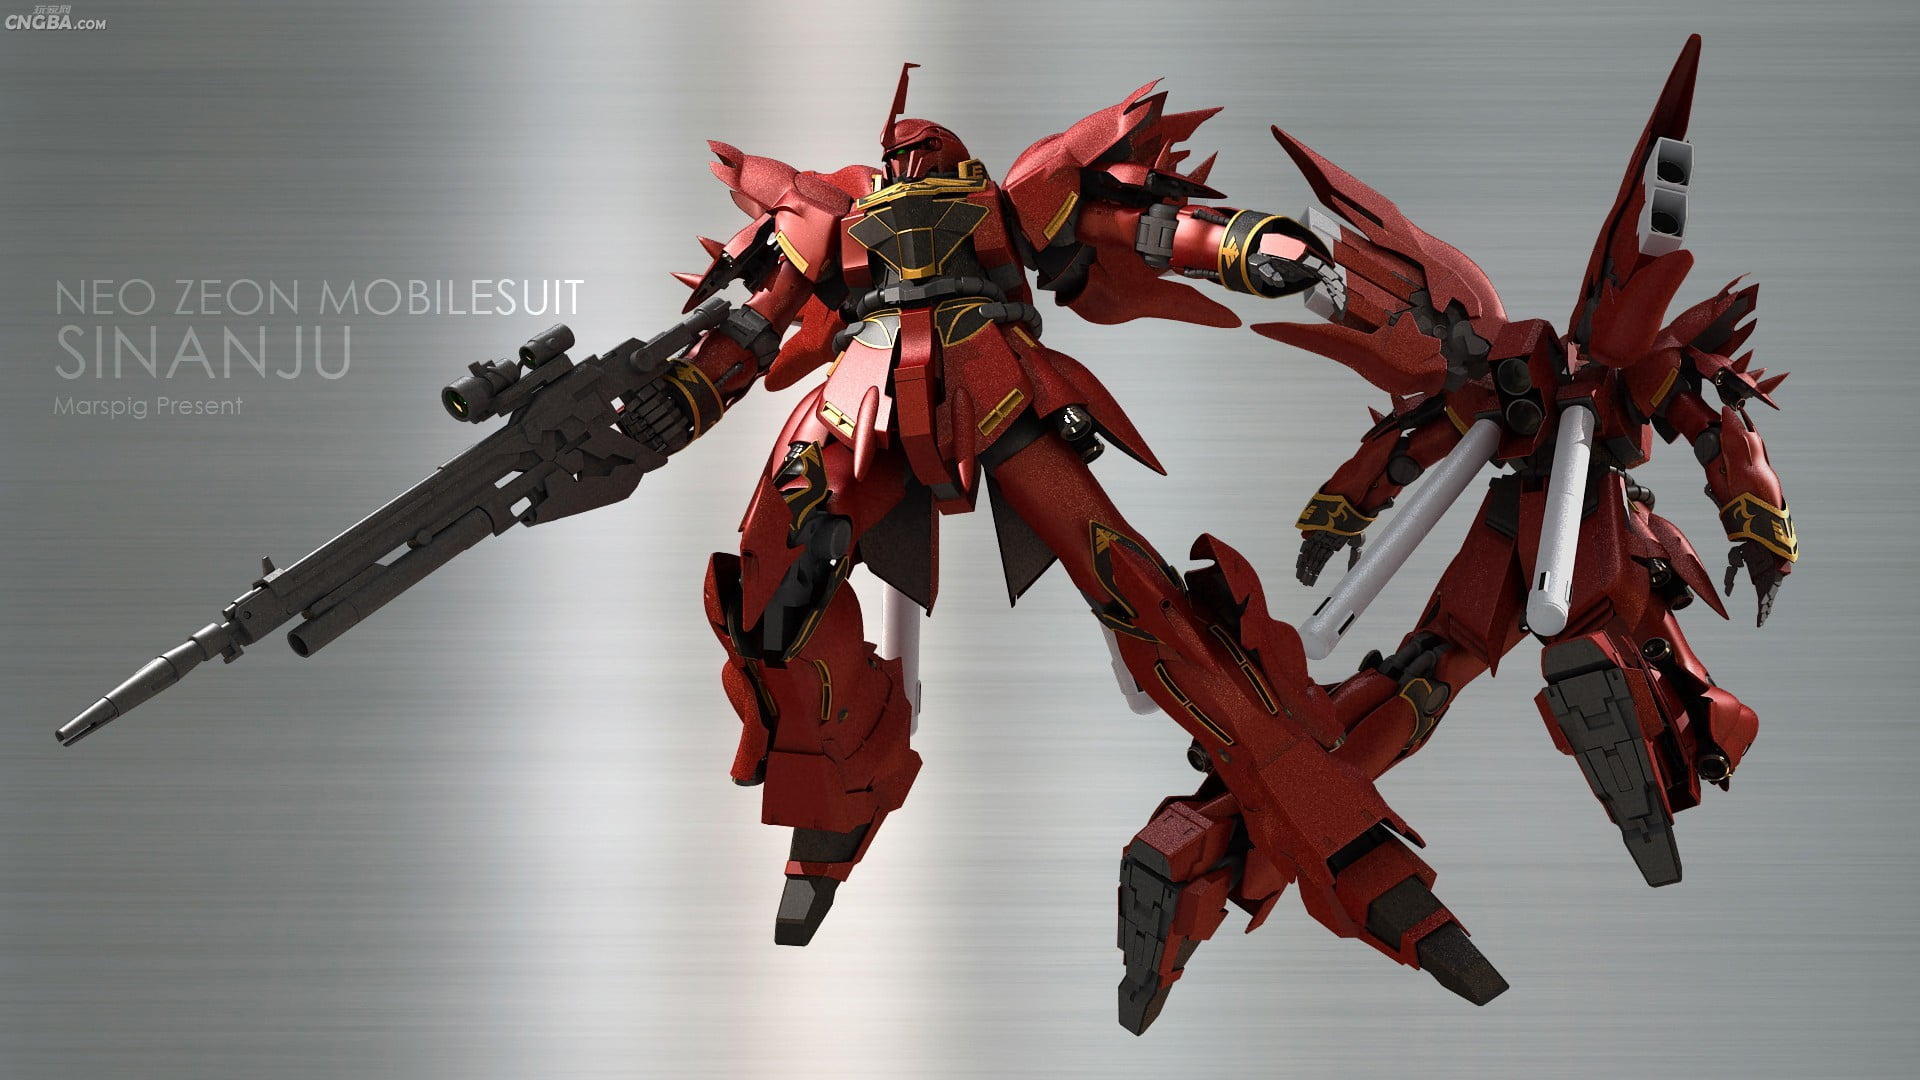 Neo Zeon Mobilesuit Sinanju, Gundam, mech, Sinanju